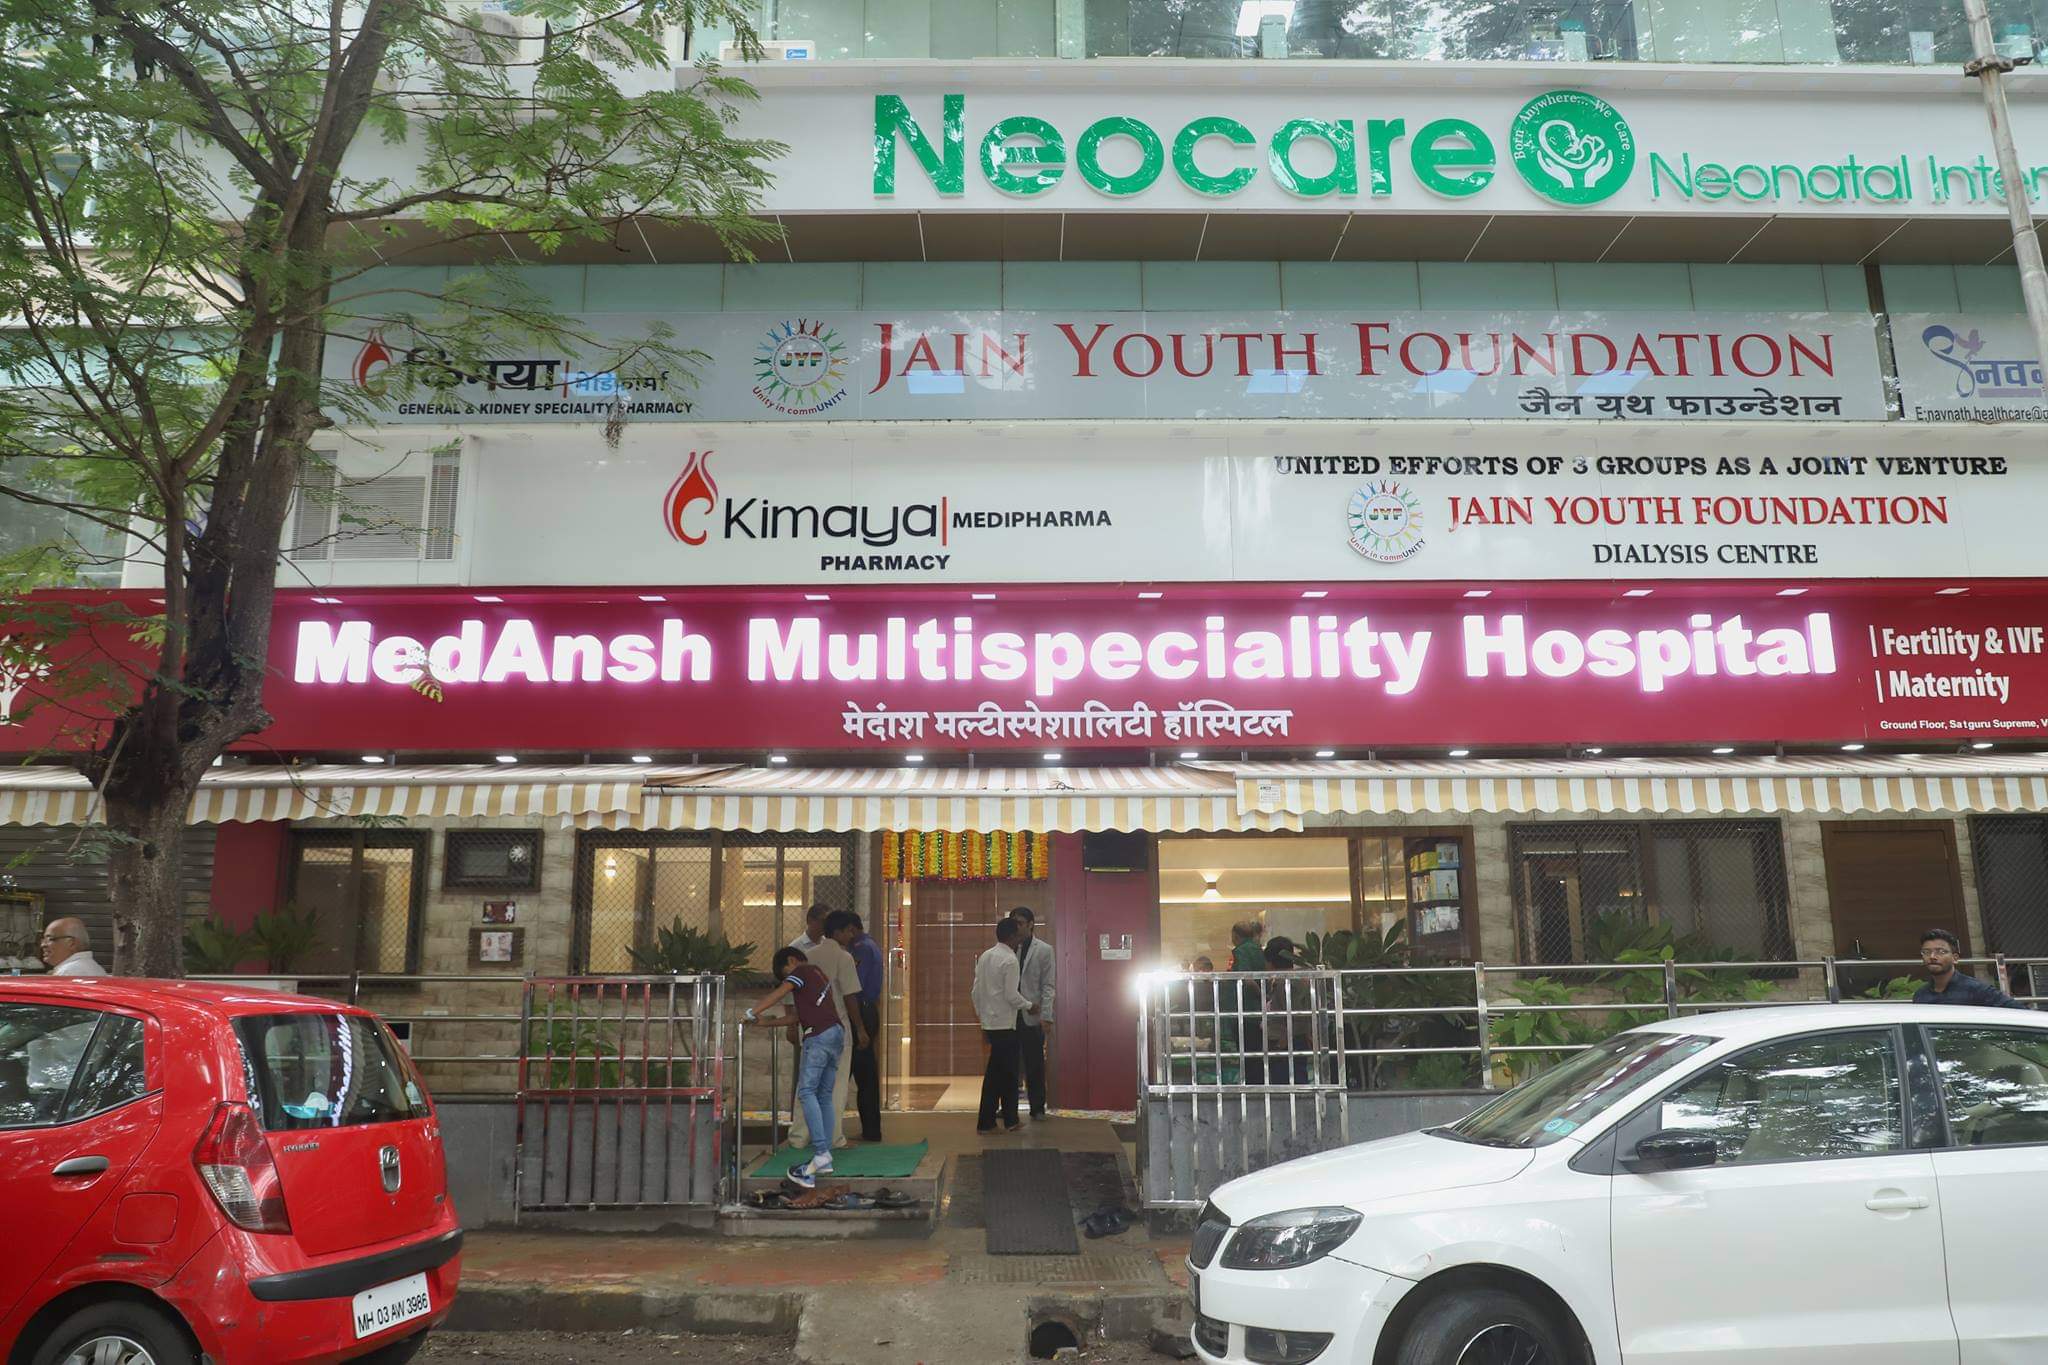 Medansh Multispeciality Hospital